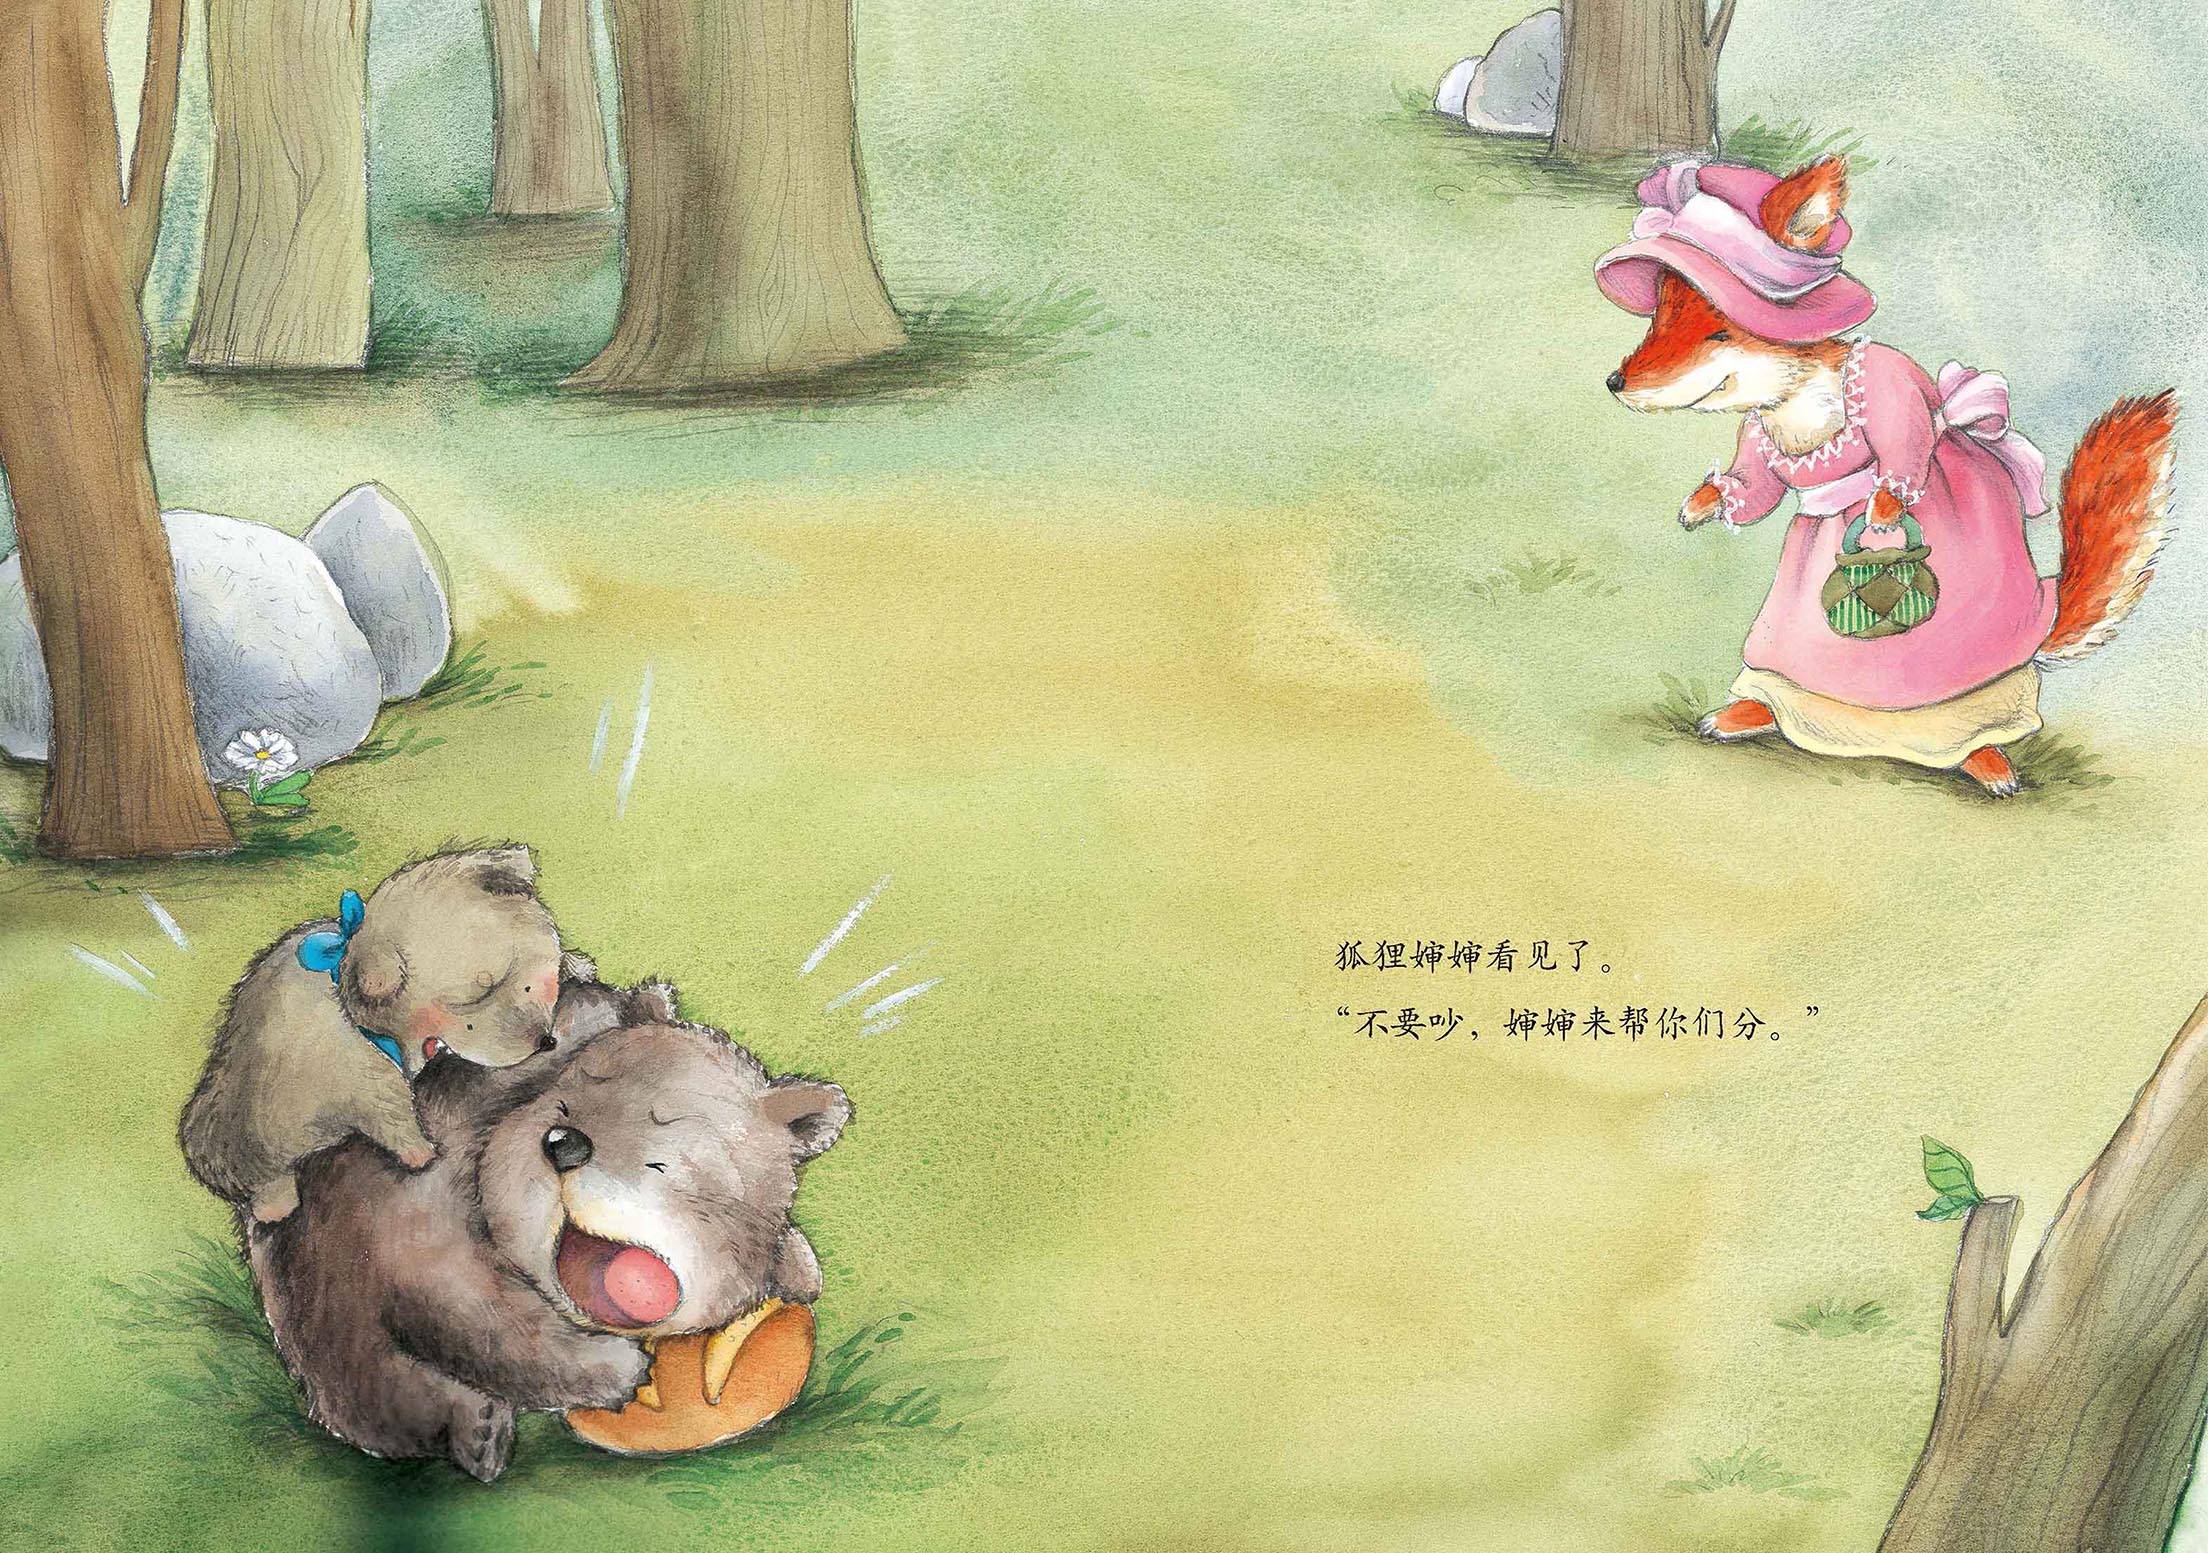 儿童绘本故事推荐《动物朋友们:两只笨狗熊》